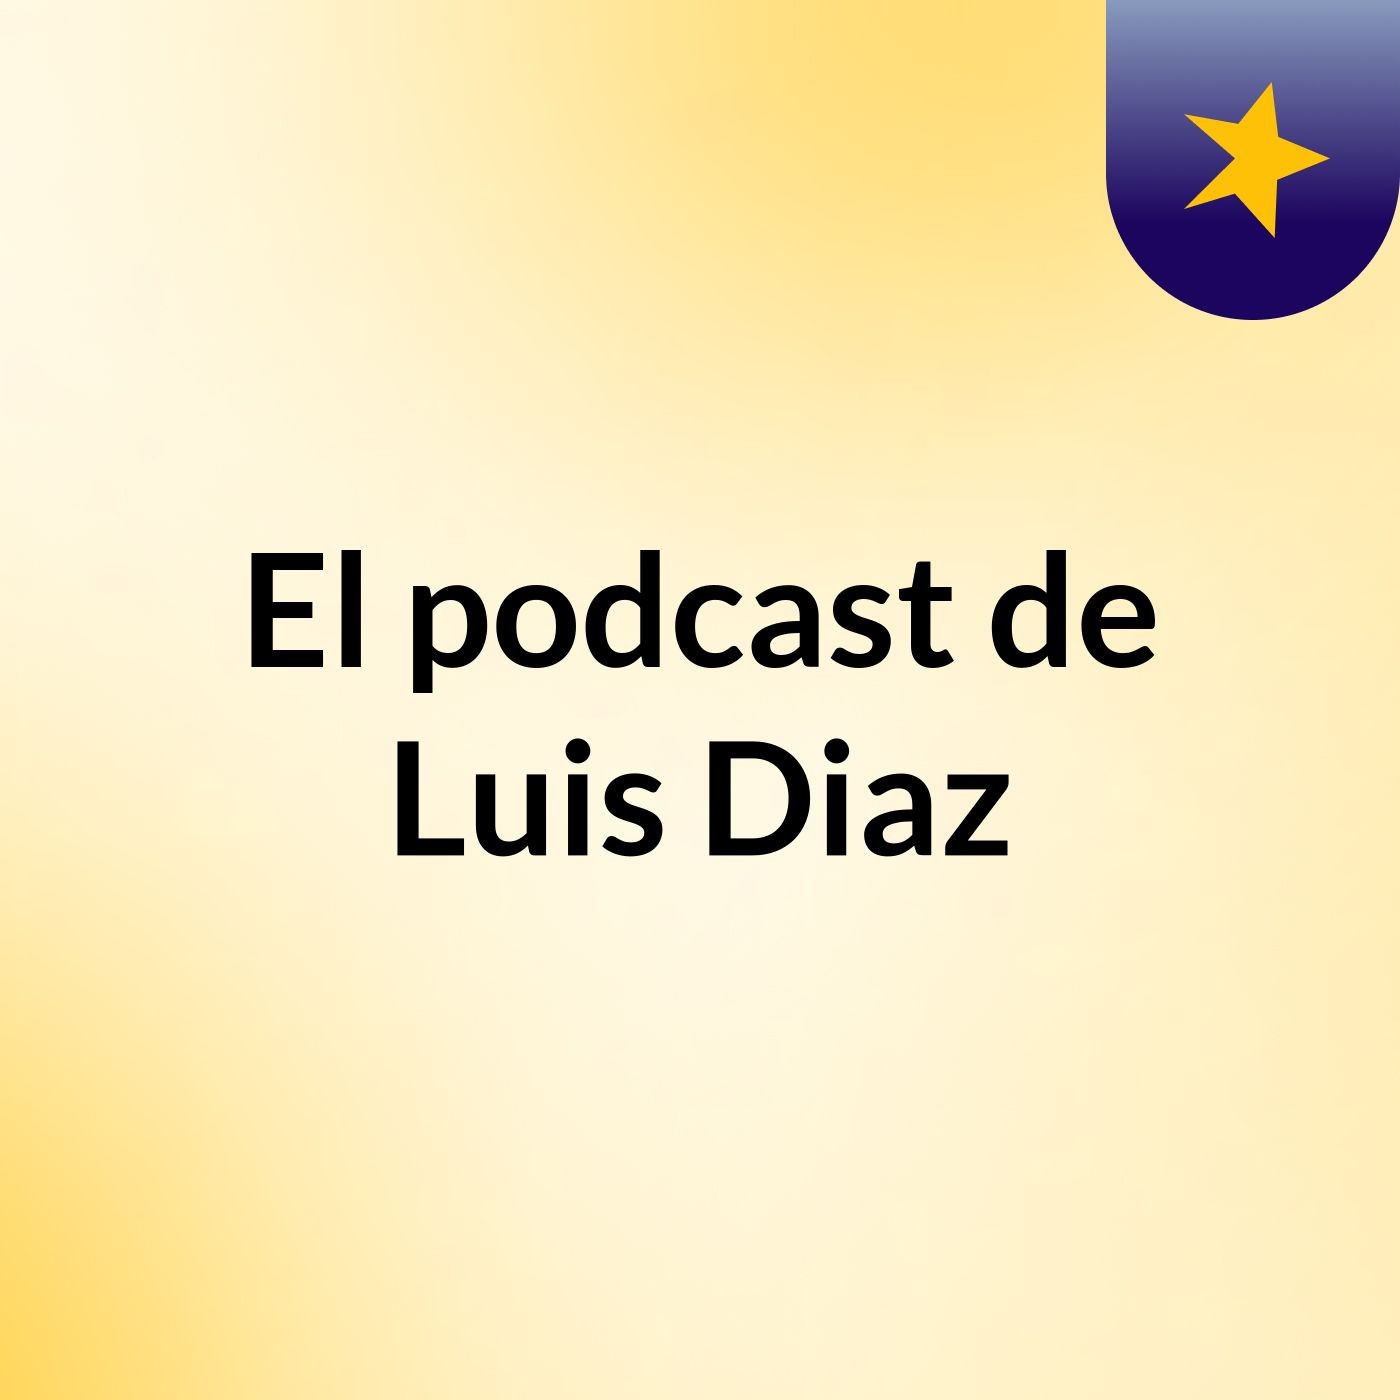 El podcast de Luis Diaz